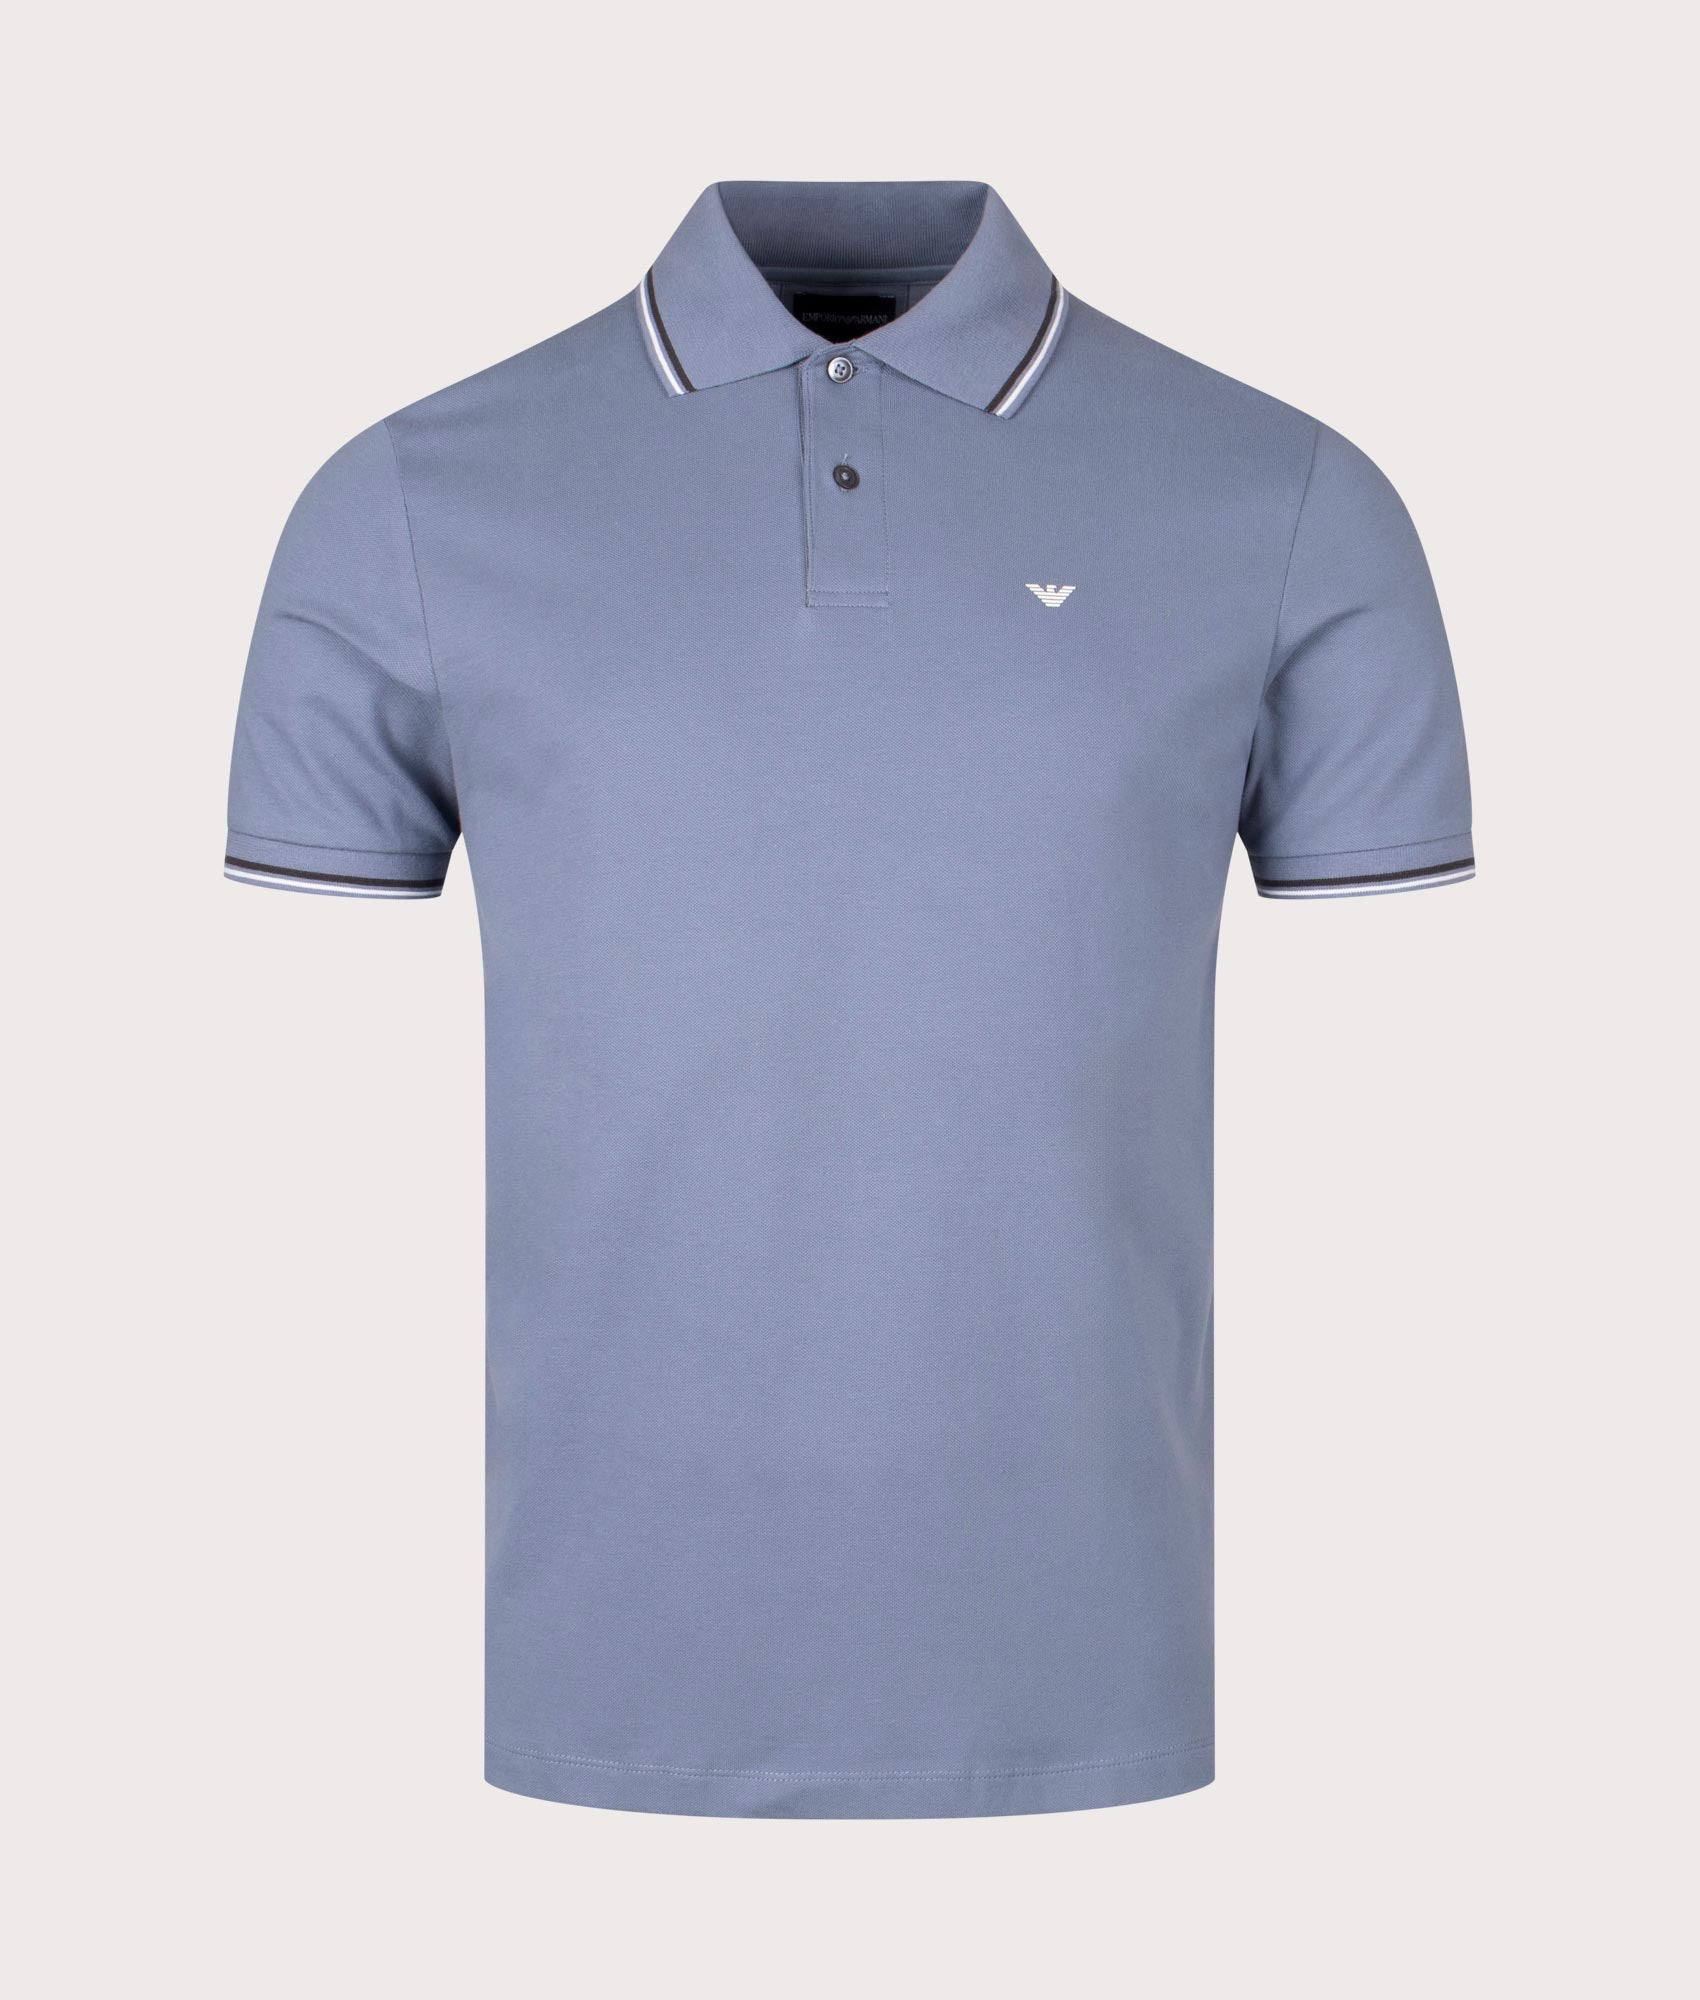 Emporio Armani Mens Essential Stretch Pique Polo Shirt - Colour: 0638 Pietra Focaia - Size: Large